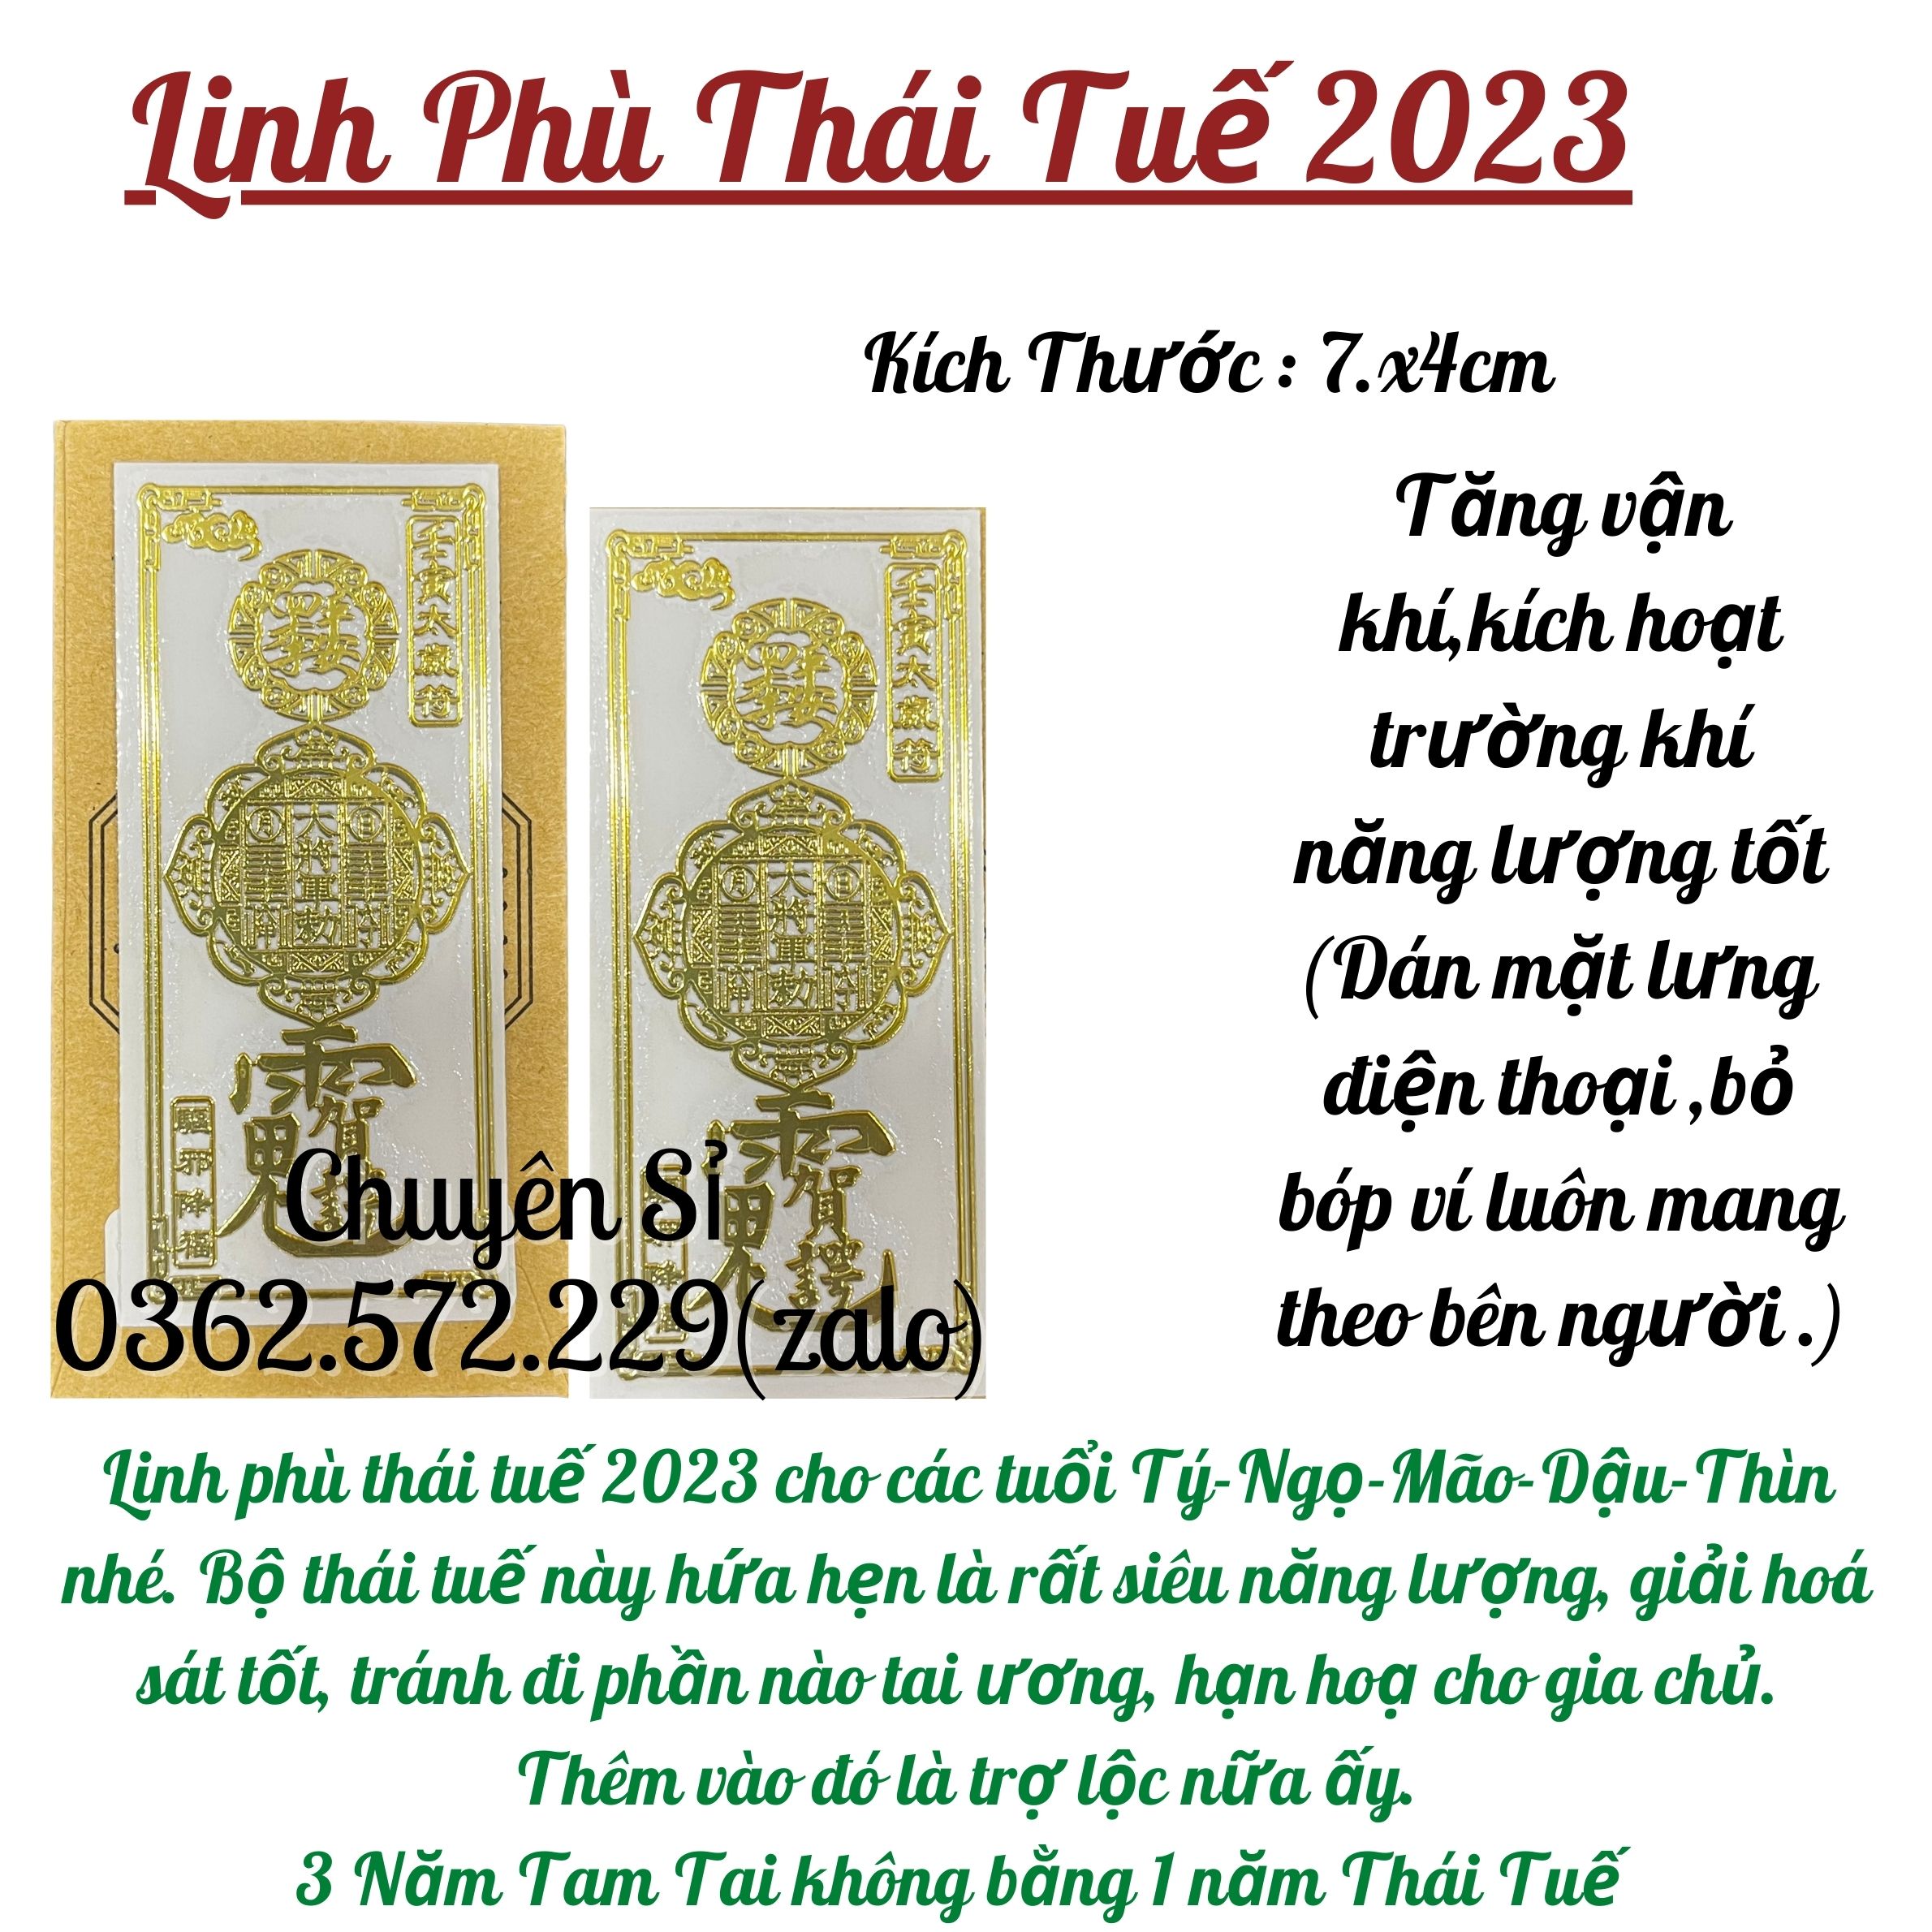 Combo Trọn Bộ Set 5 Món Thái Tuế 2023: Túi Thái Tuế-Móc Khóa-Kim Bài-Linh Phù-Thẻ Thái Tuế Đỏ